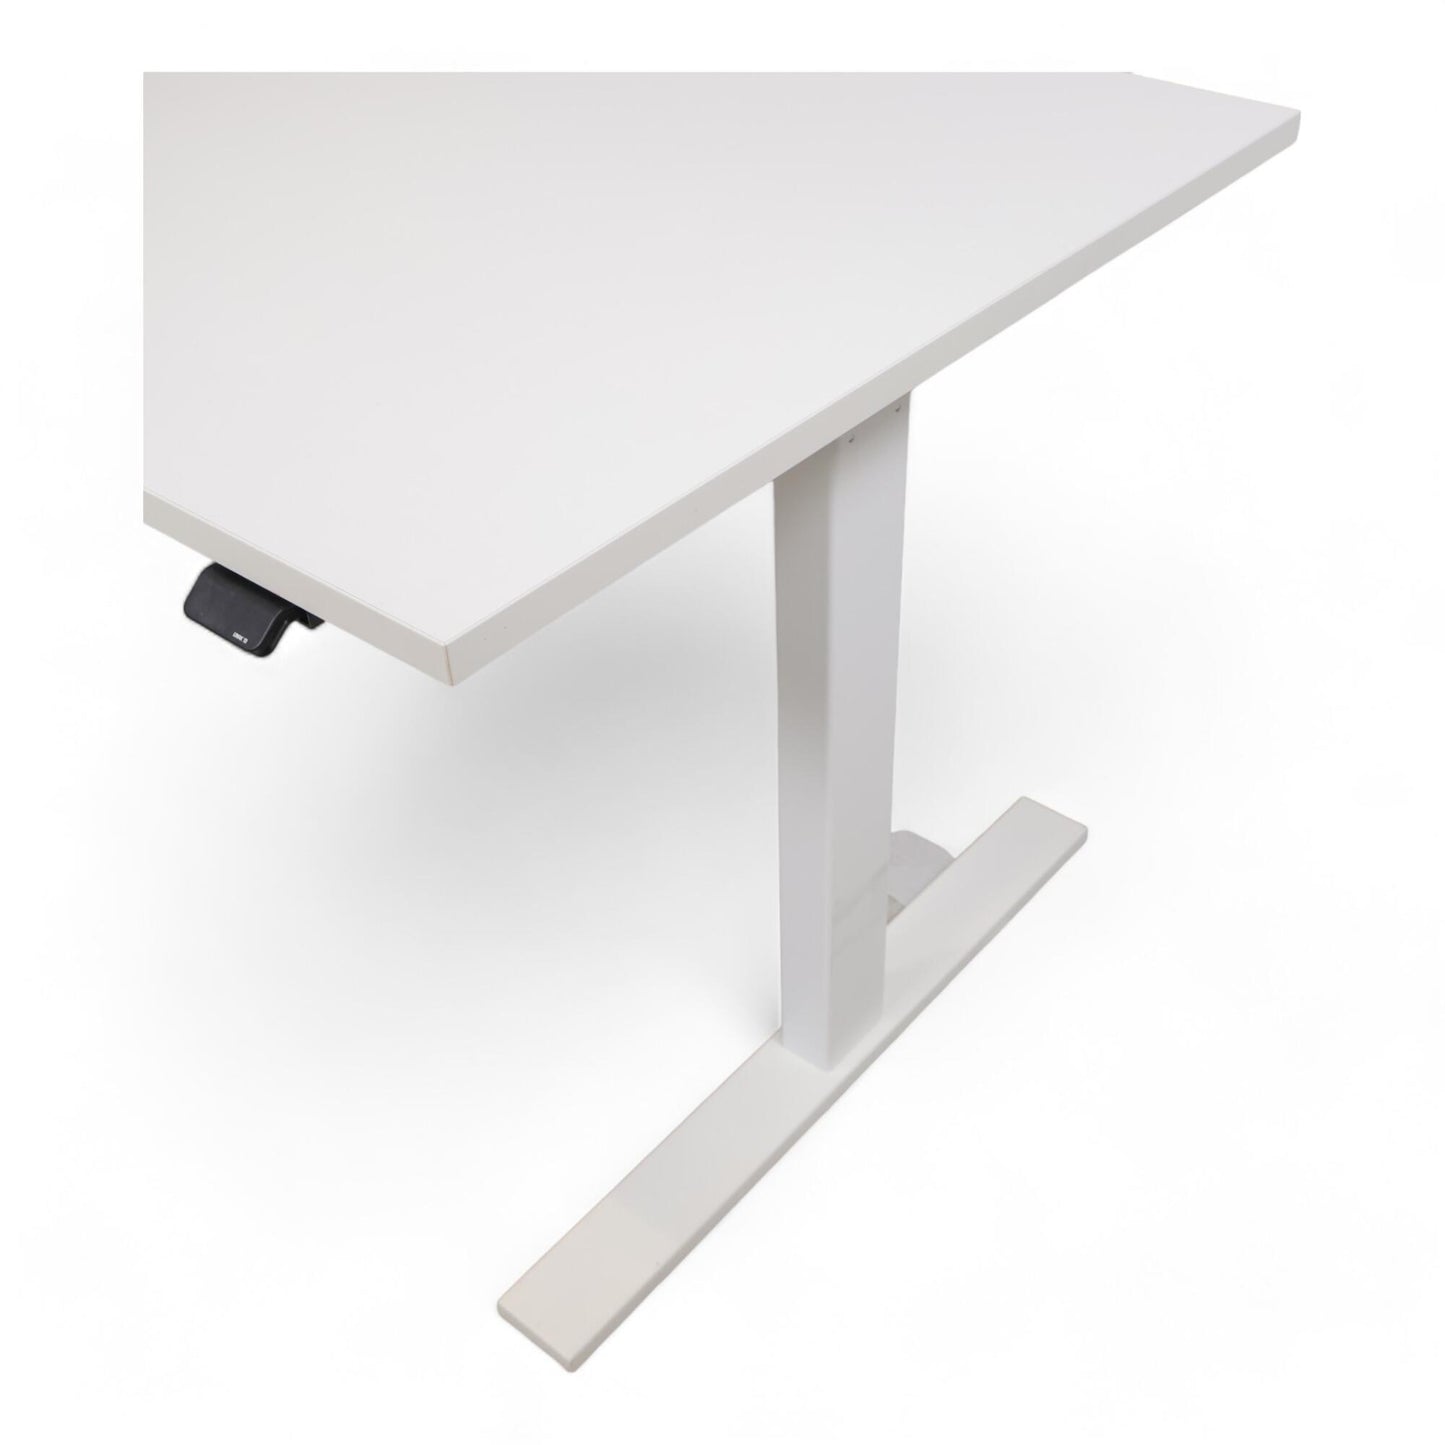 Kvalitetssikret | Helhvit 140x80 cm, Linak elektrisk hev/senk skrivebord, 2018 modell